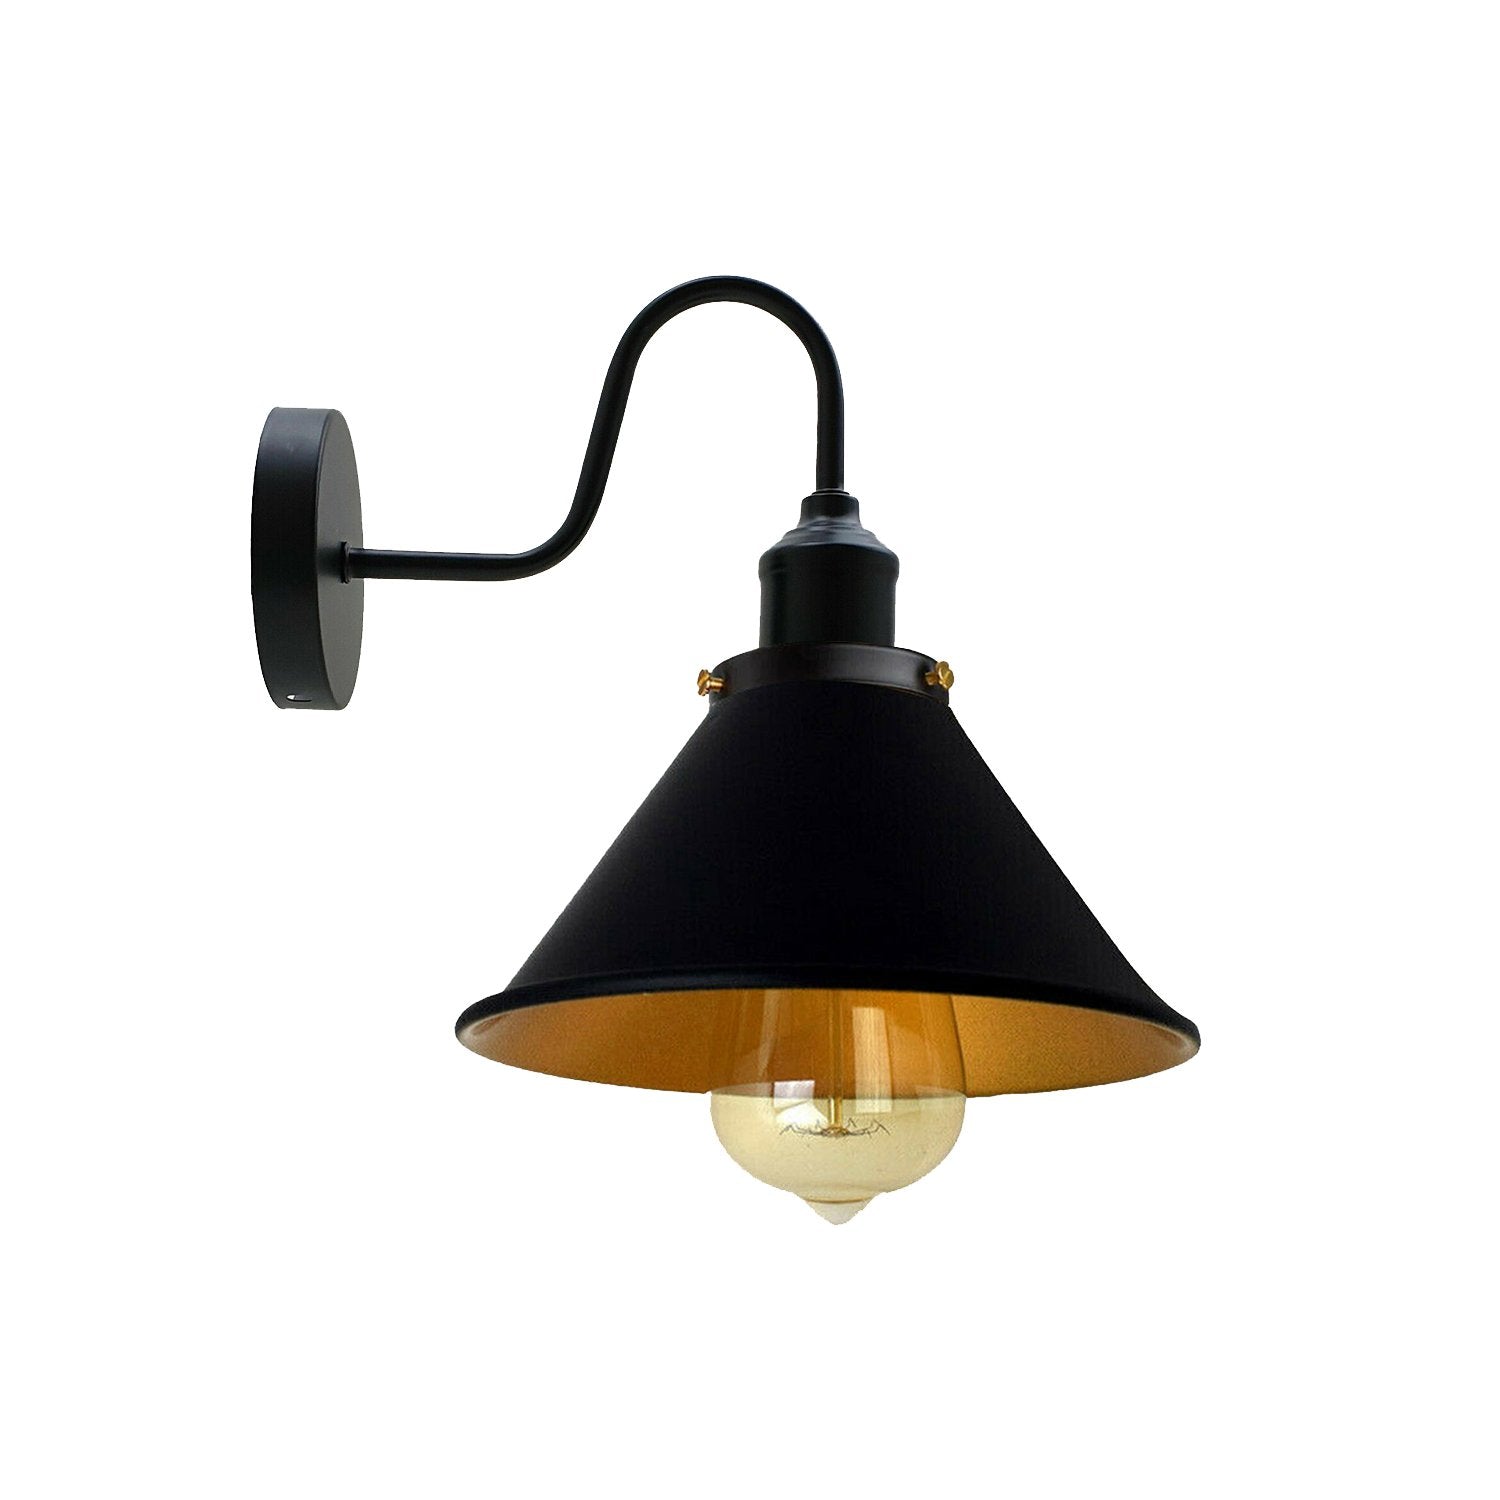 Metal industriel væglampe vintage kegleformet væglampe sort guld indendørs